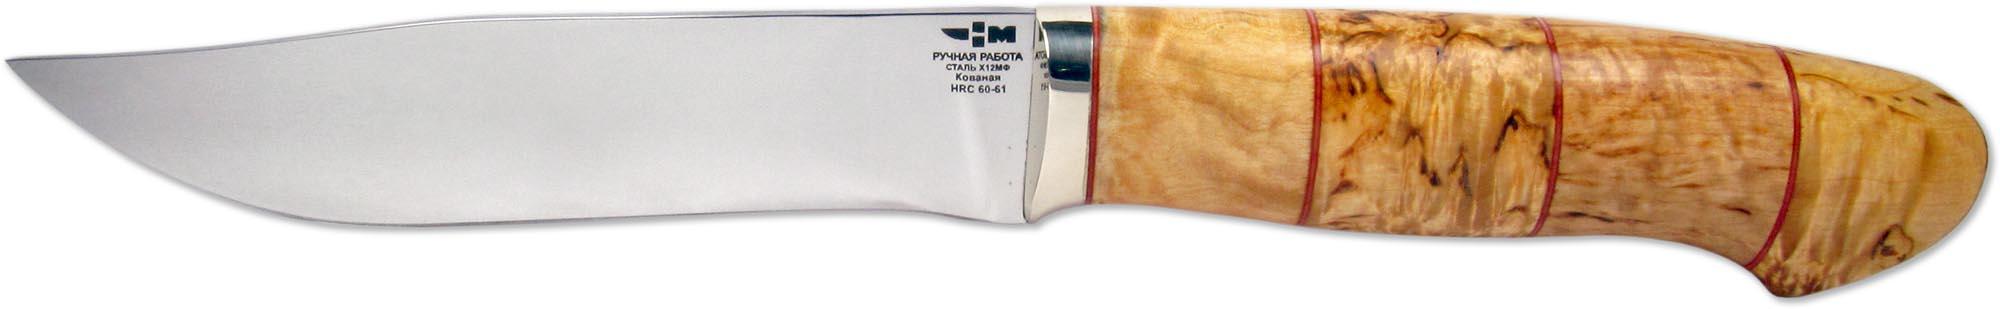 БИЗОН (9559)к Нож охотничий кованая сталь х12мф, карелка, полная взрезка, оковка зеркальное литьё мельхиор